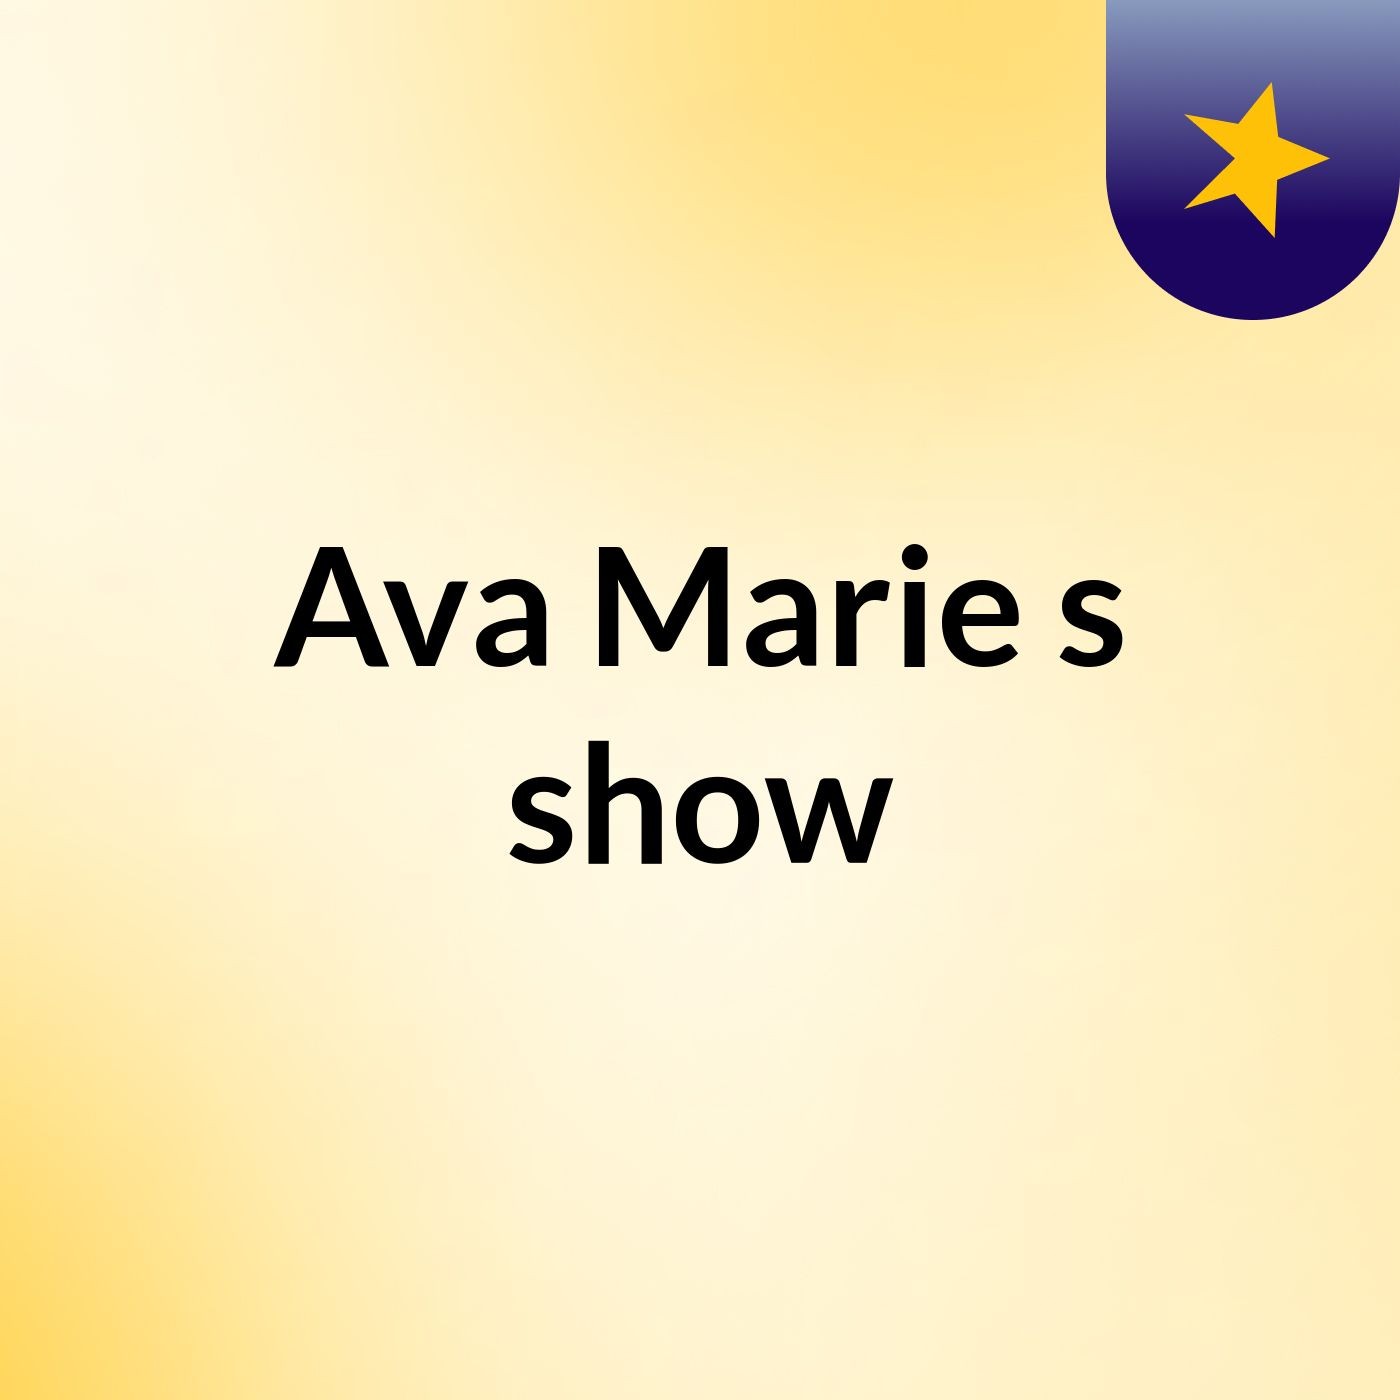 Ava Marie's show